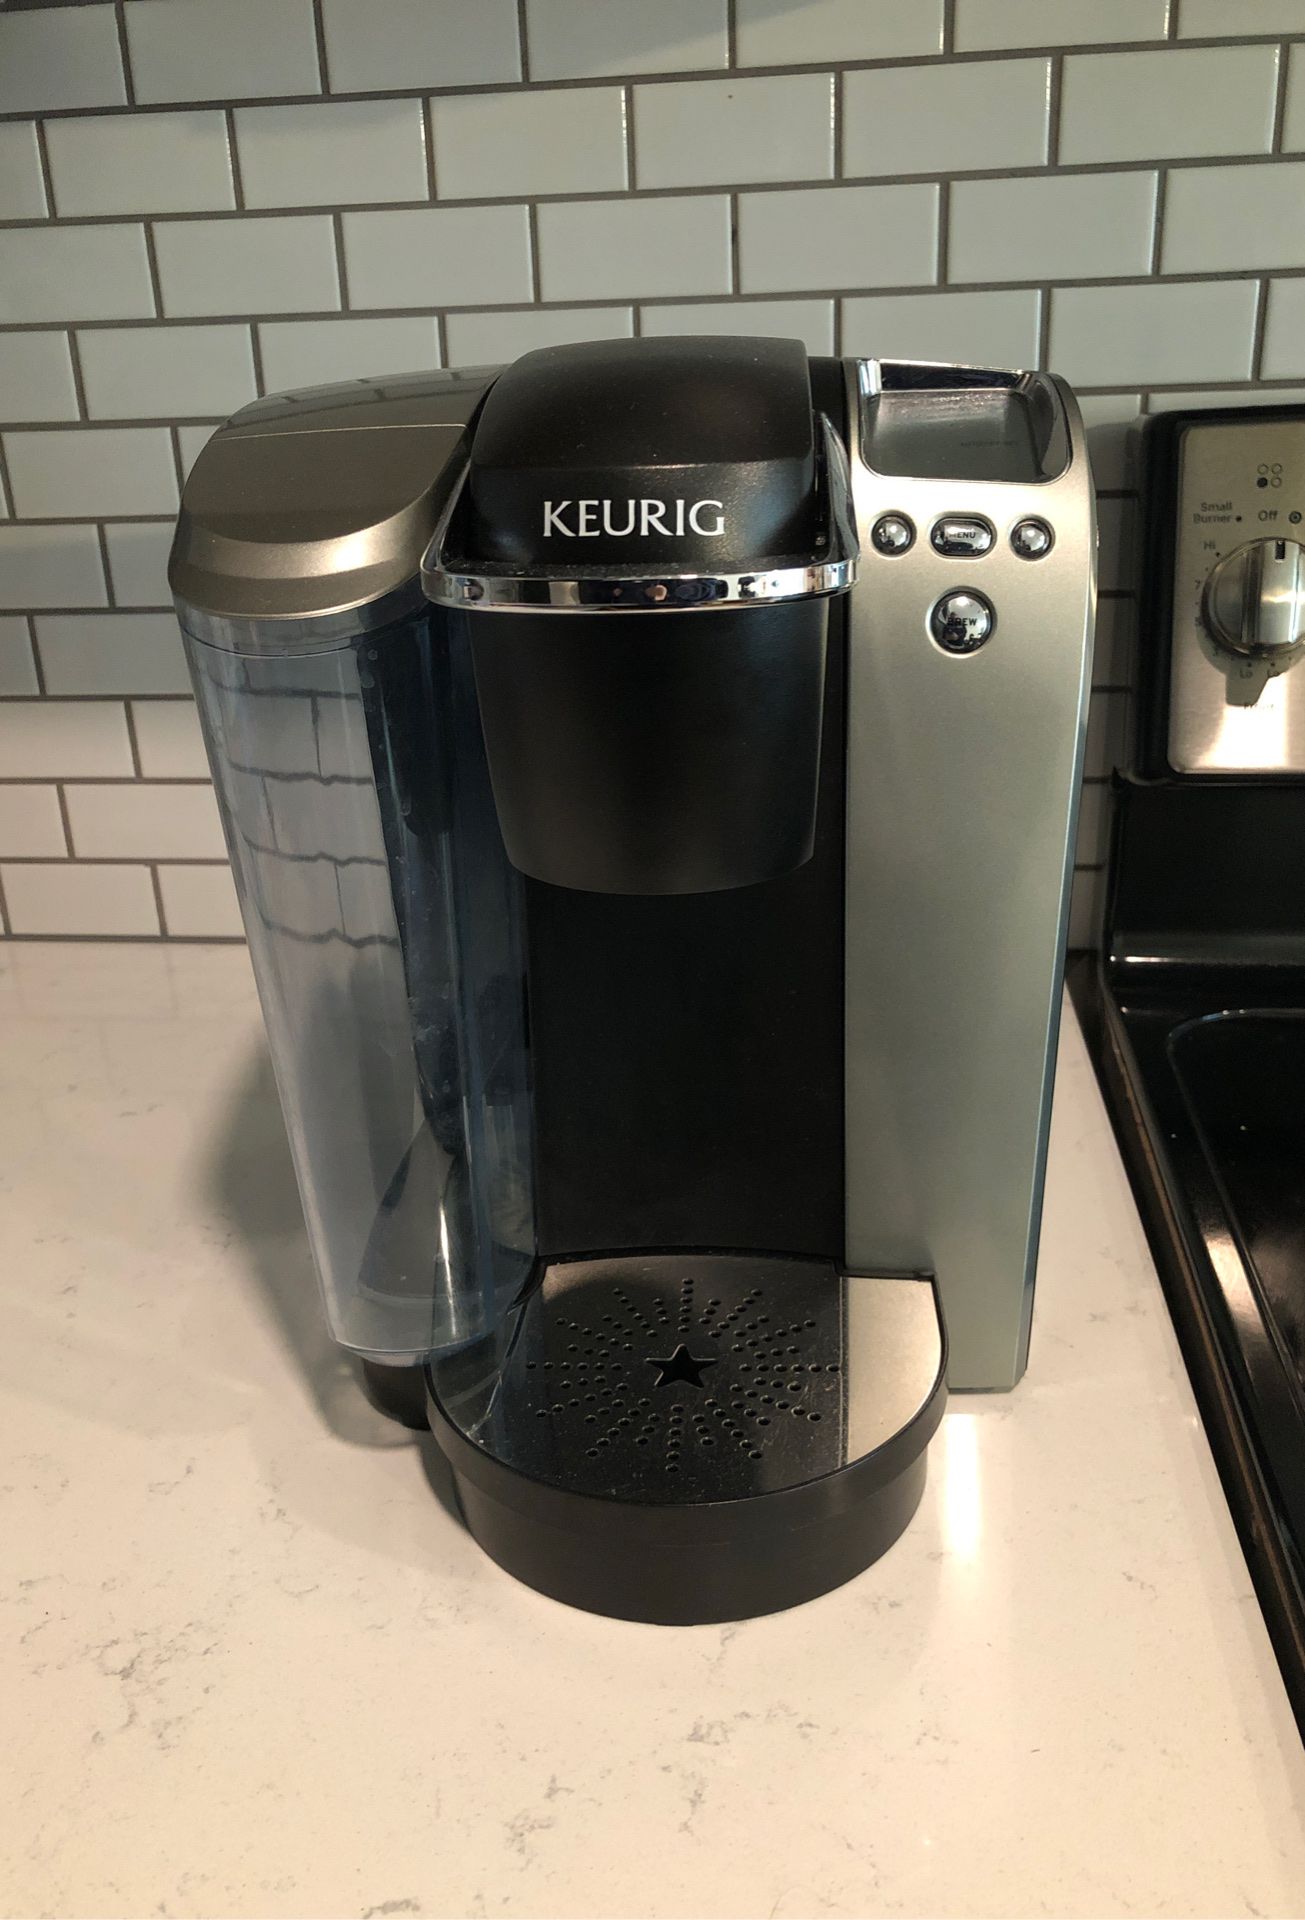 Keurig coffee maker-includes 36 k-cups!